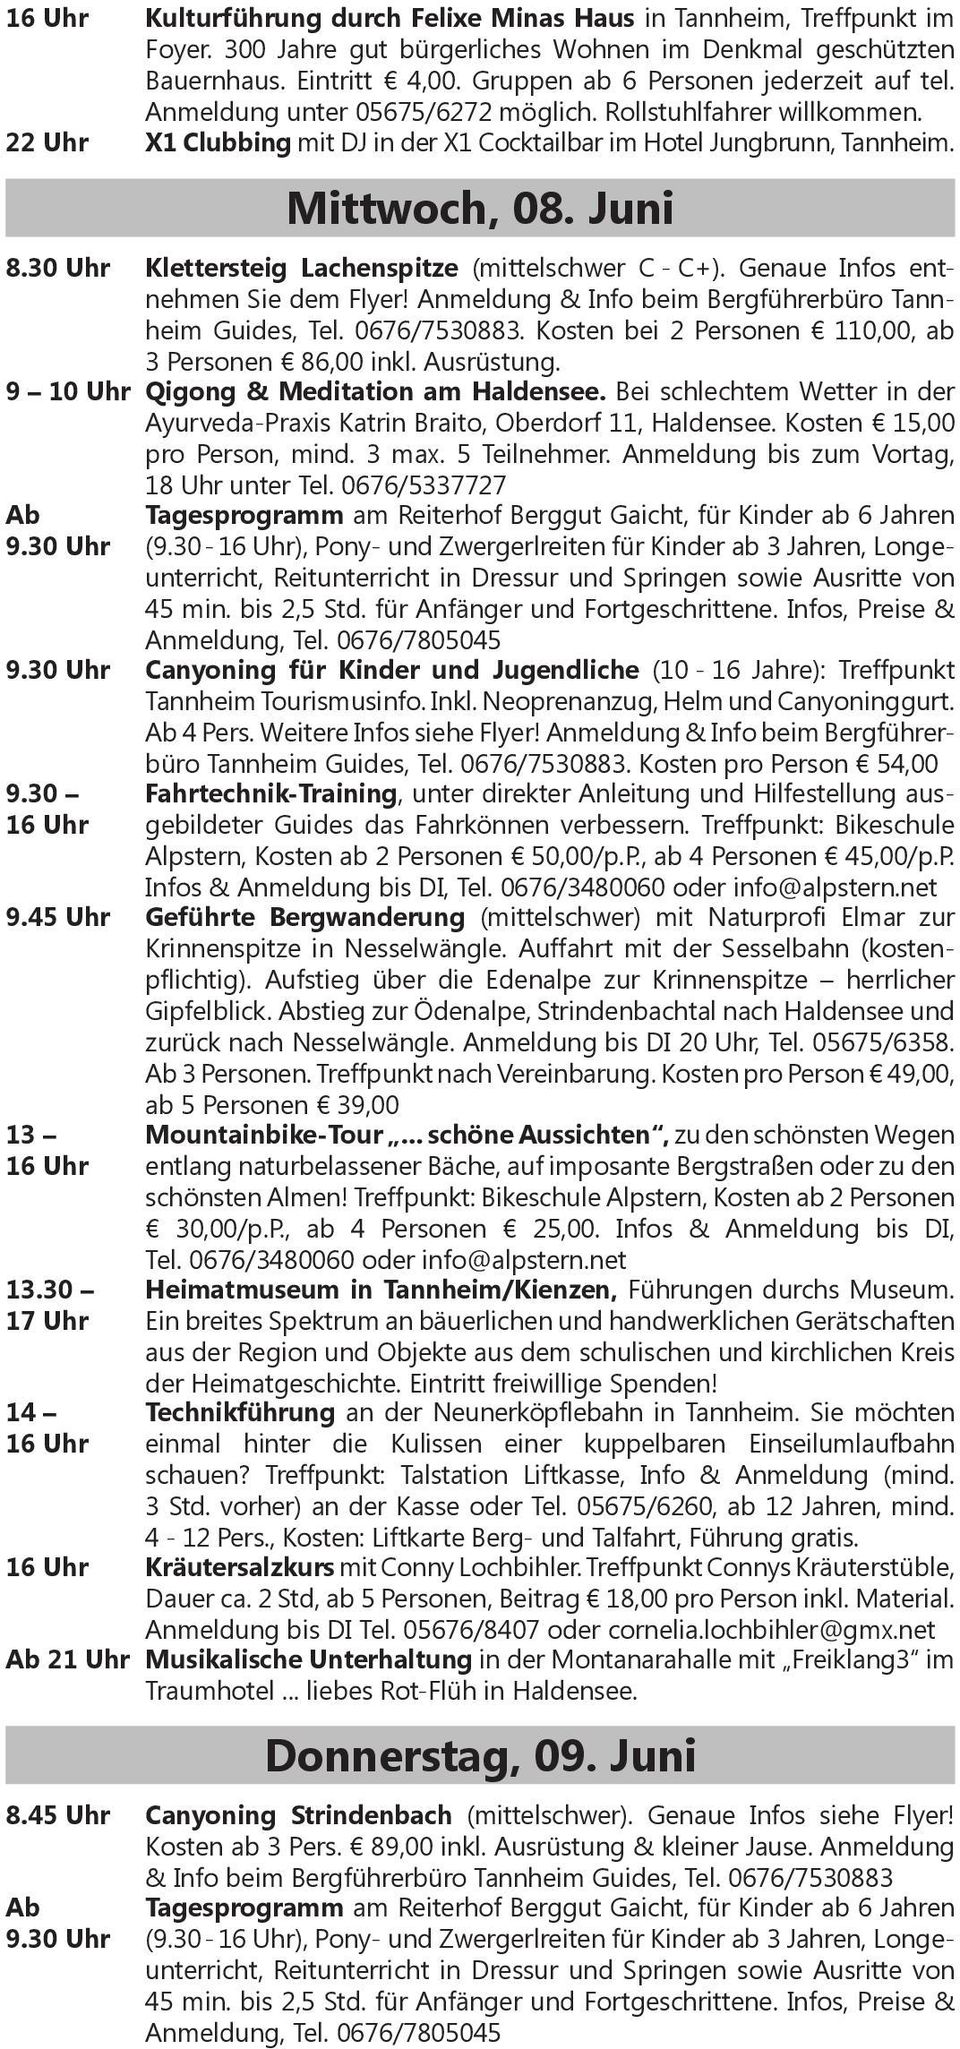 30 Uhr Klettersteig Lachenspitze (mittelschwer C - C+). Genaue Infos entnehmen Sie dem Flyer! Anmeldung & Info beim Bergführerbüro Tannheim Guides, Tel. 0676/7530883.